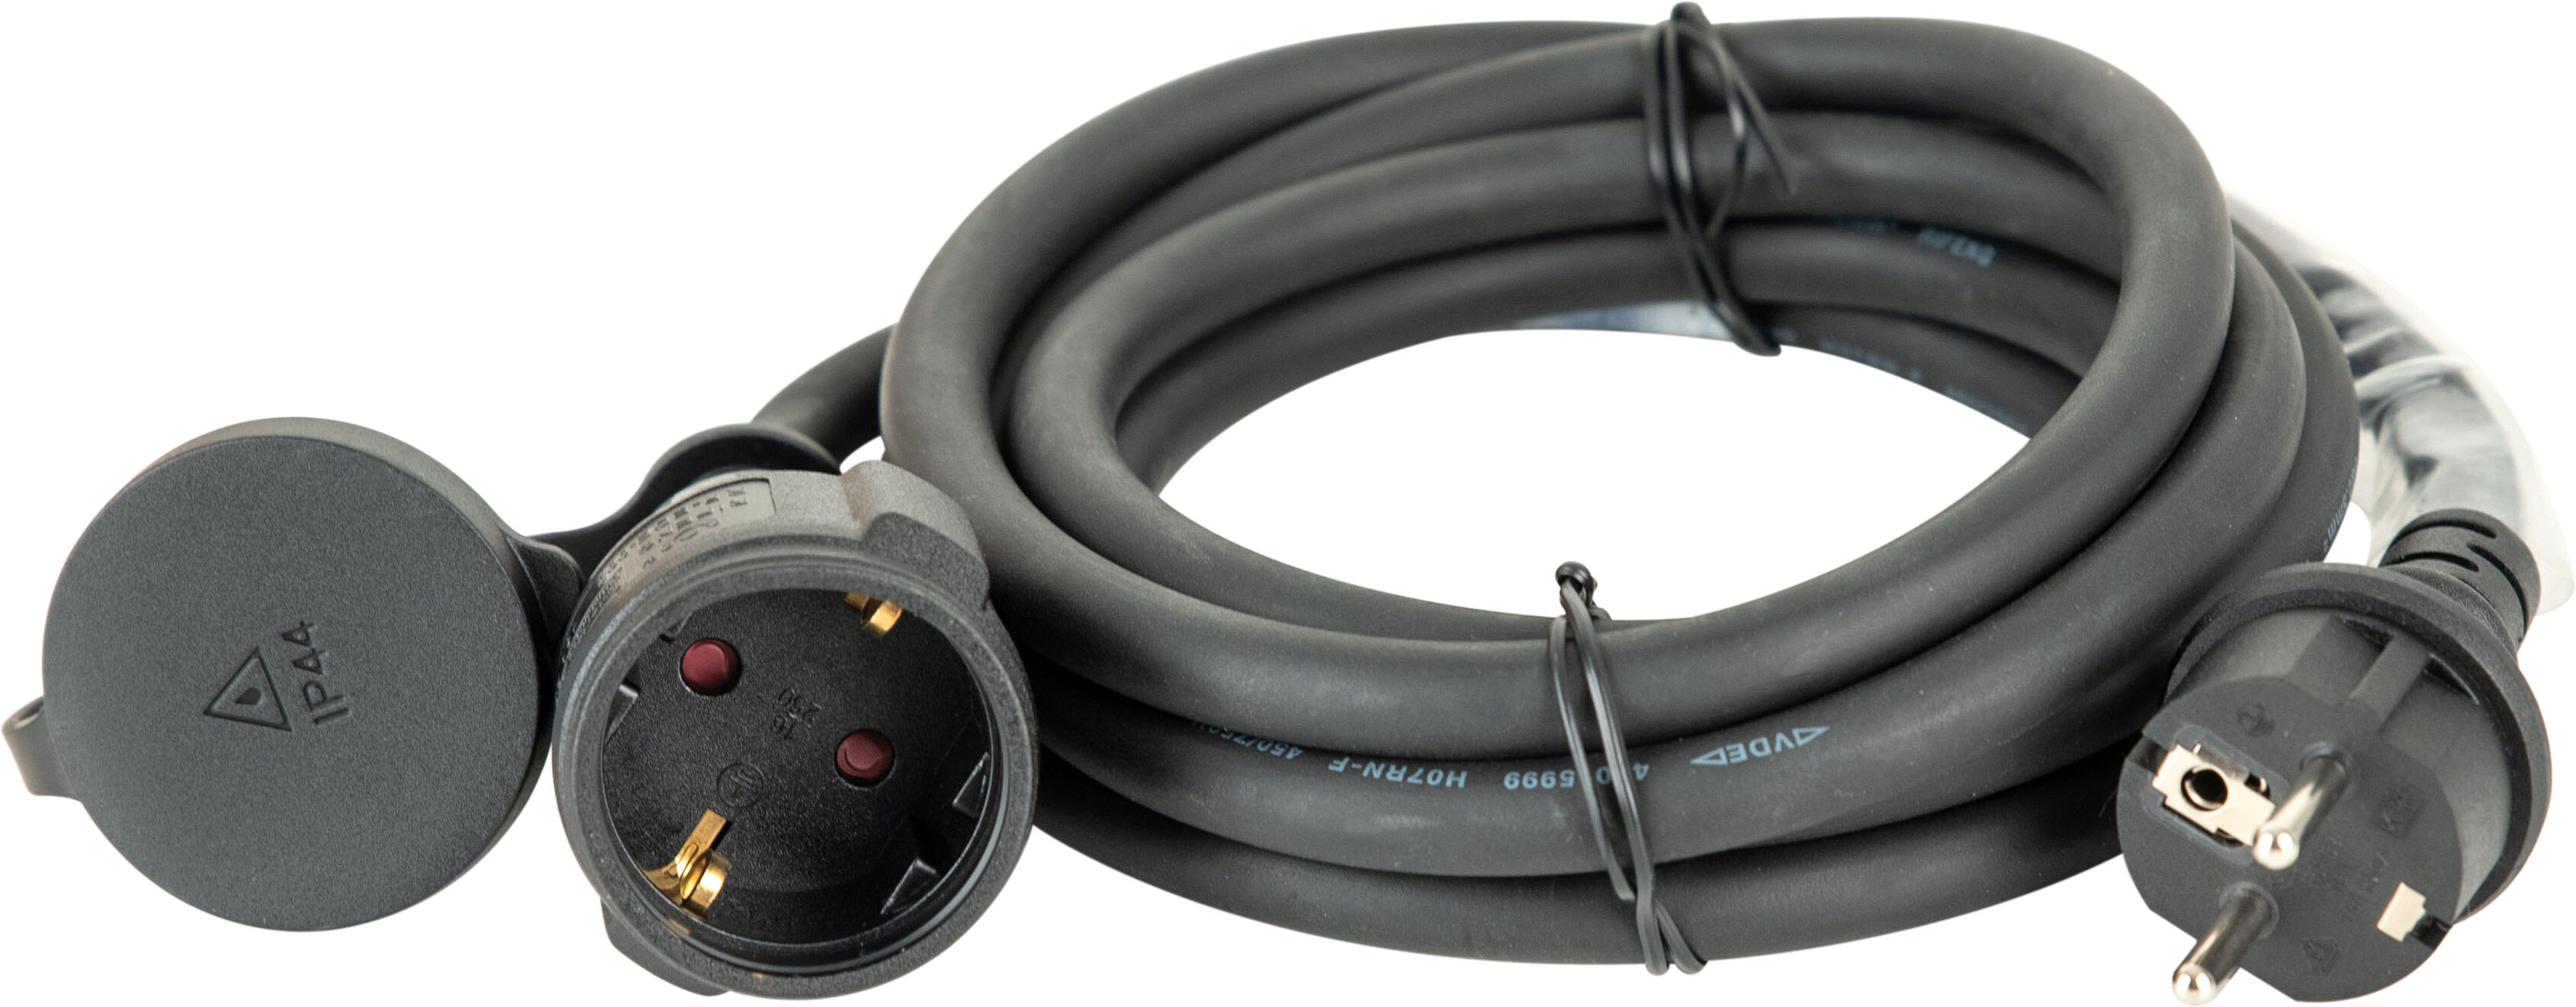 DAP-Audio H07RN-F 3G2.5 Schuko Extension Cable 3 m - Câbles Schuko